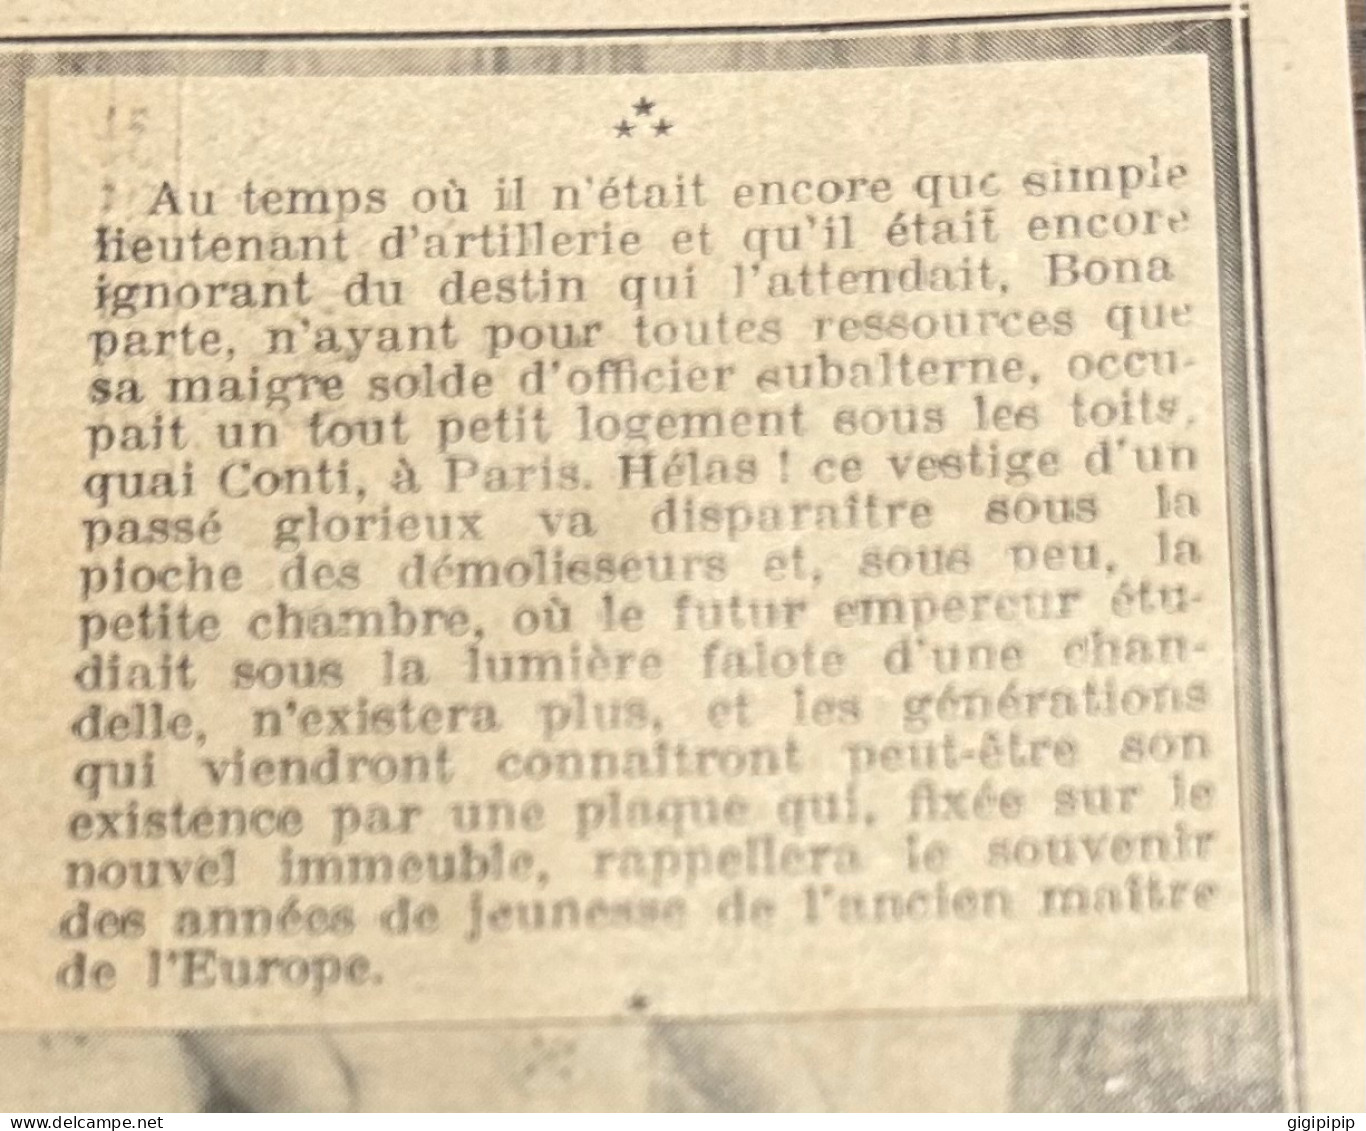 1930 GHI16 MAISON HABITEE PAR NAPOLÉON BONAPARTE QUAND IL ETAIT LIEUTENANT D'ARTILLERIE, A PARIS, QUI VA ETRE DEMOLIE - Colecciones